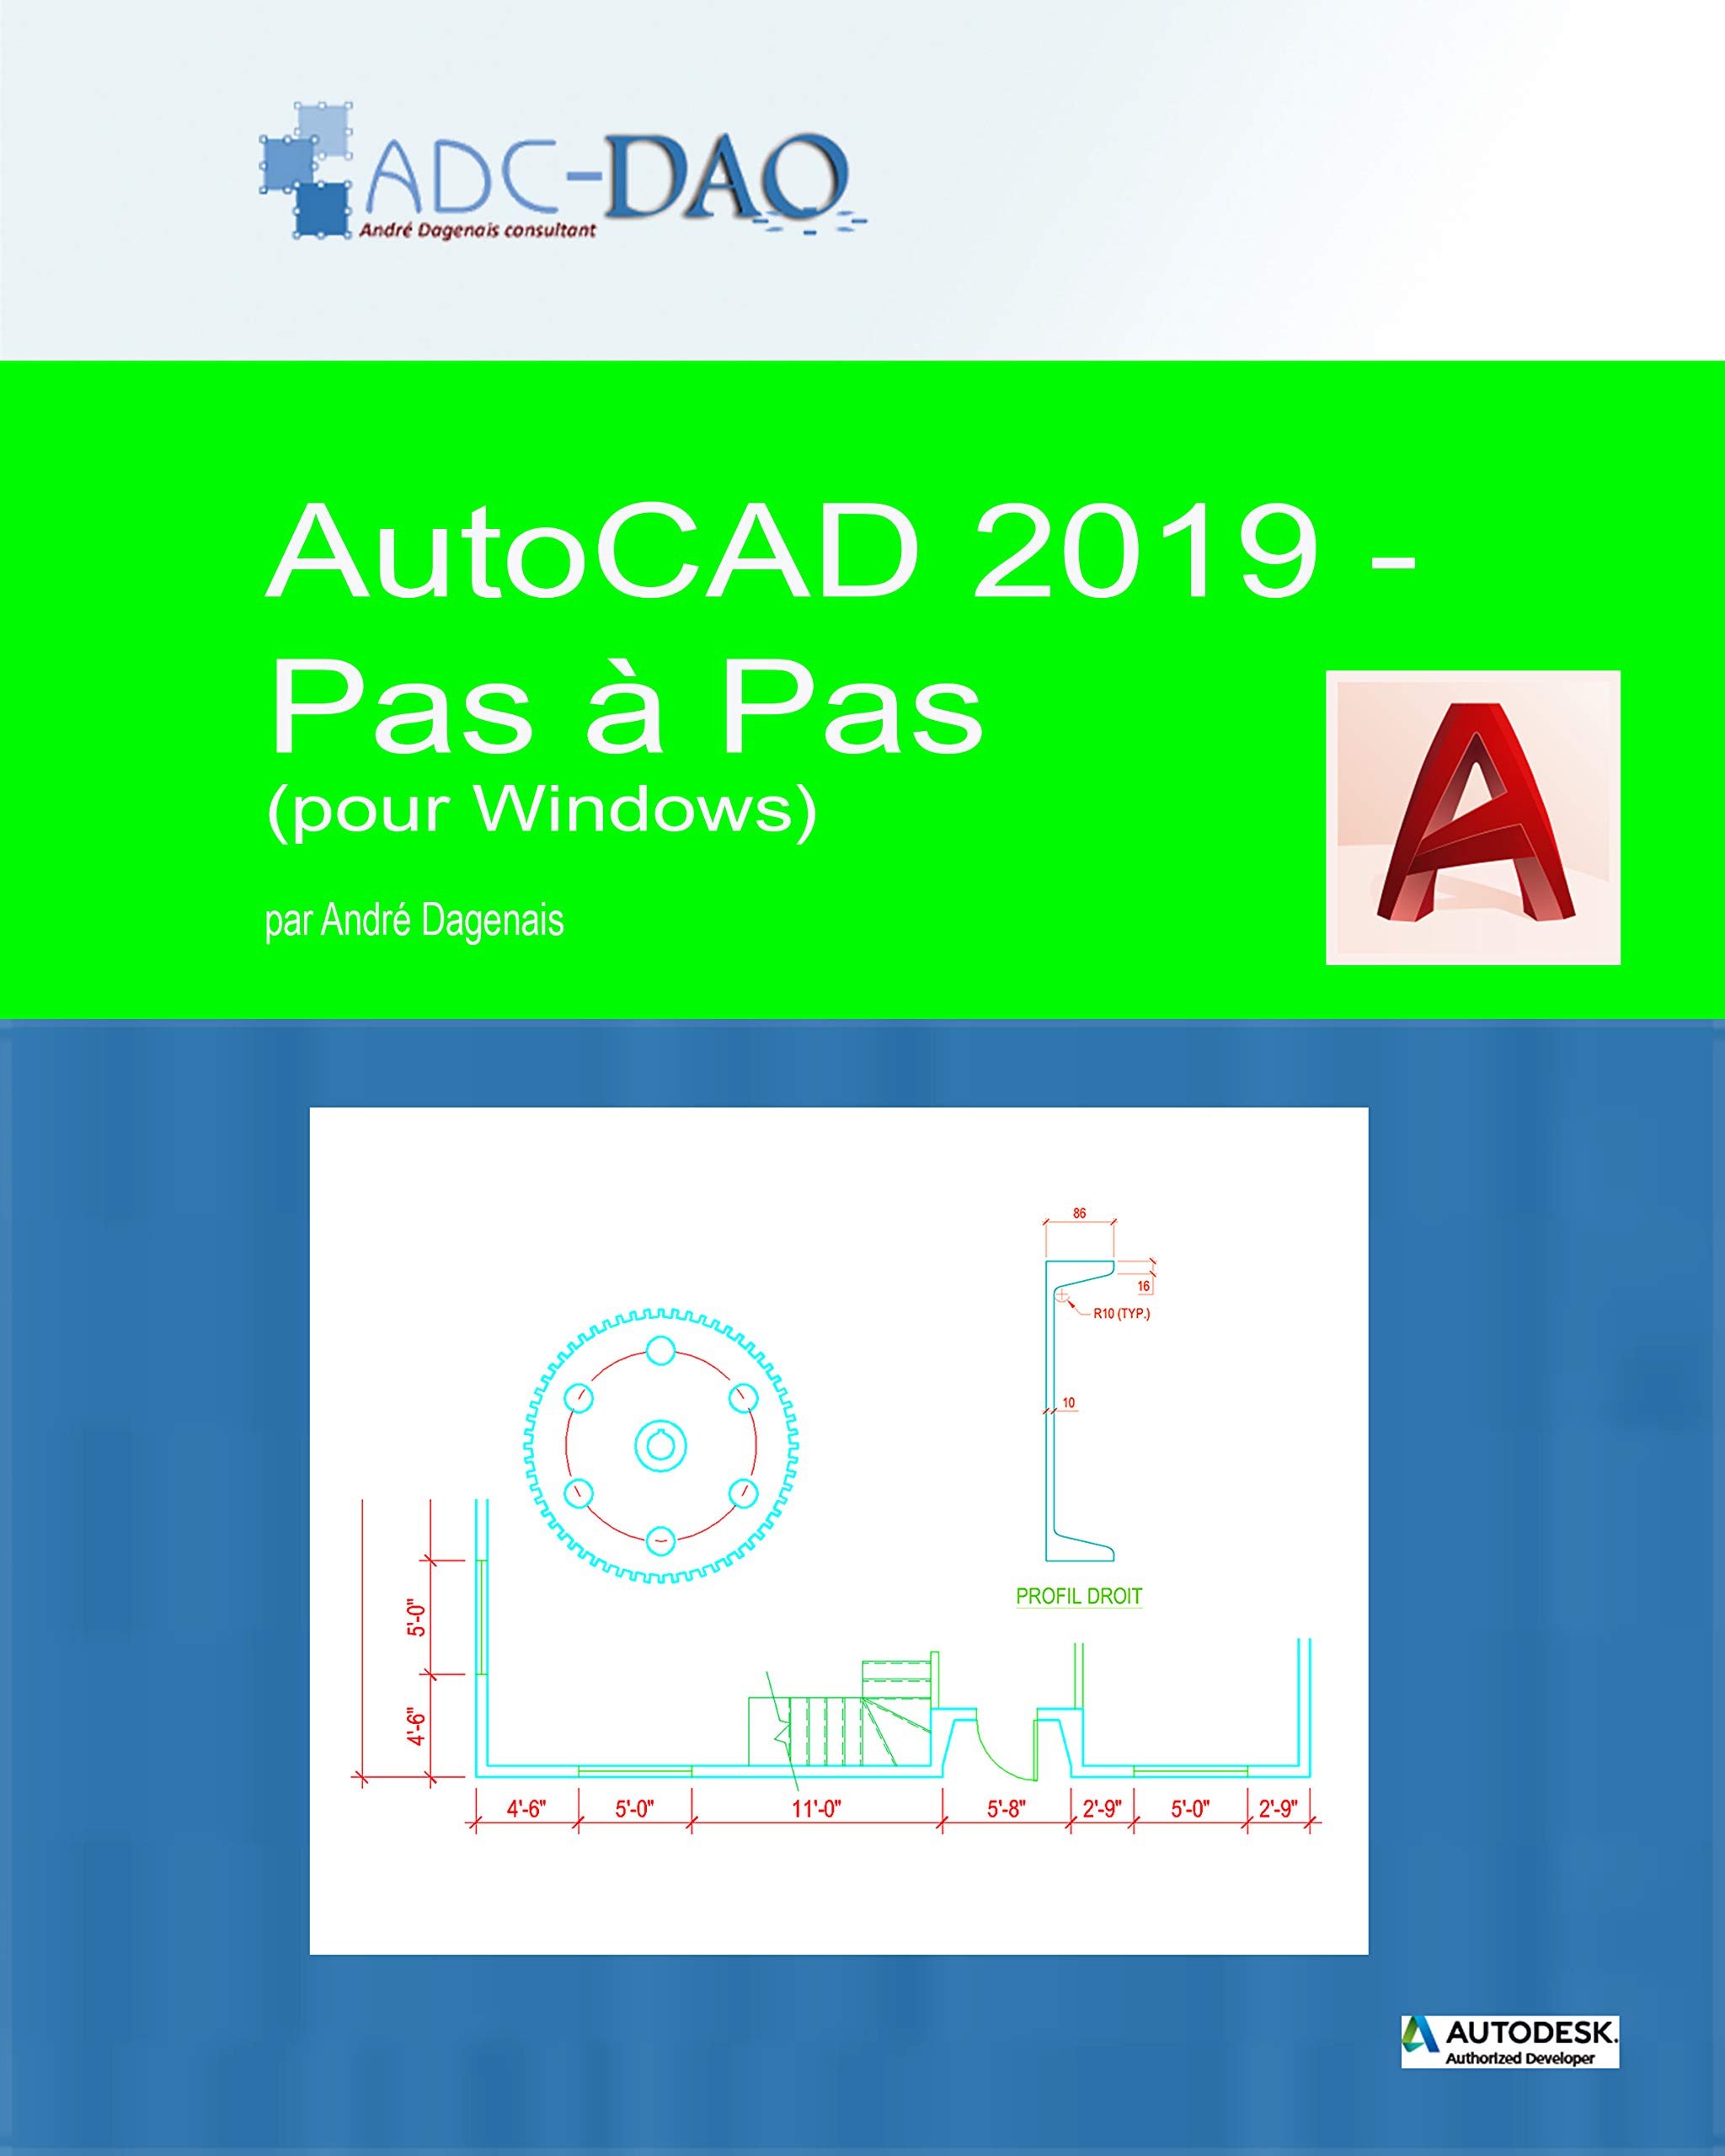 AutoCAD 2019 - Pas à pas: pour Windows (French Edition)